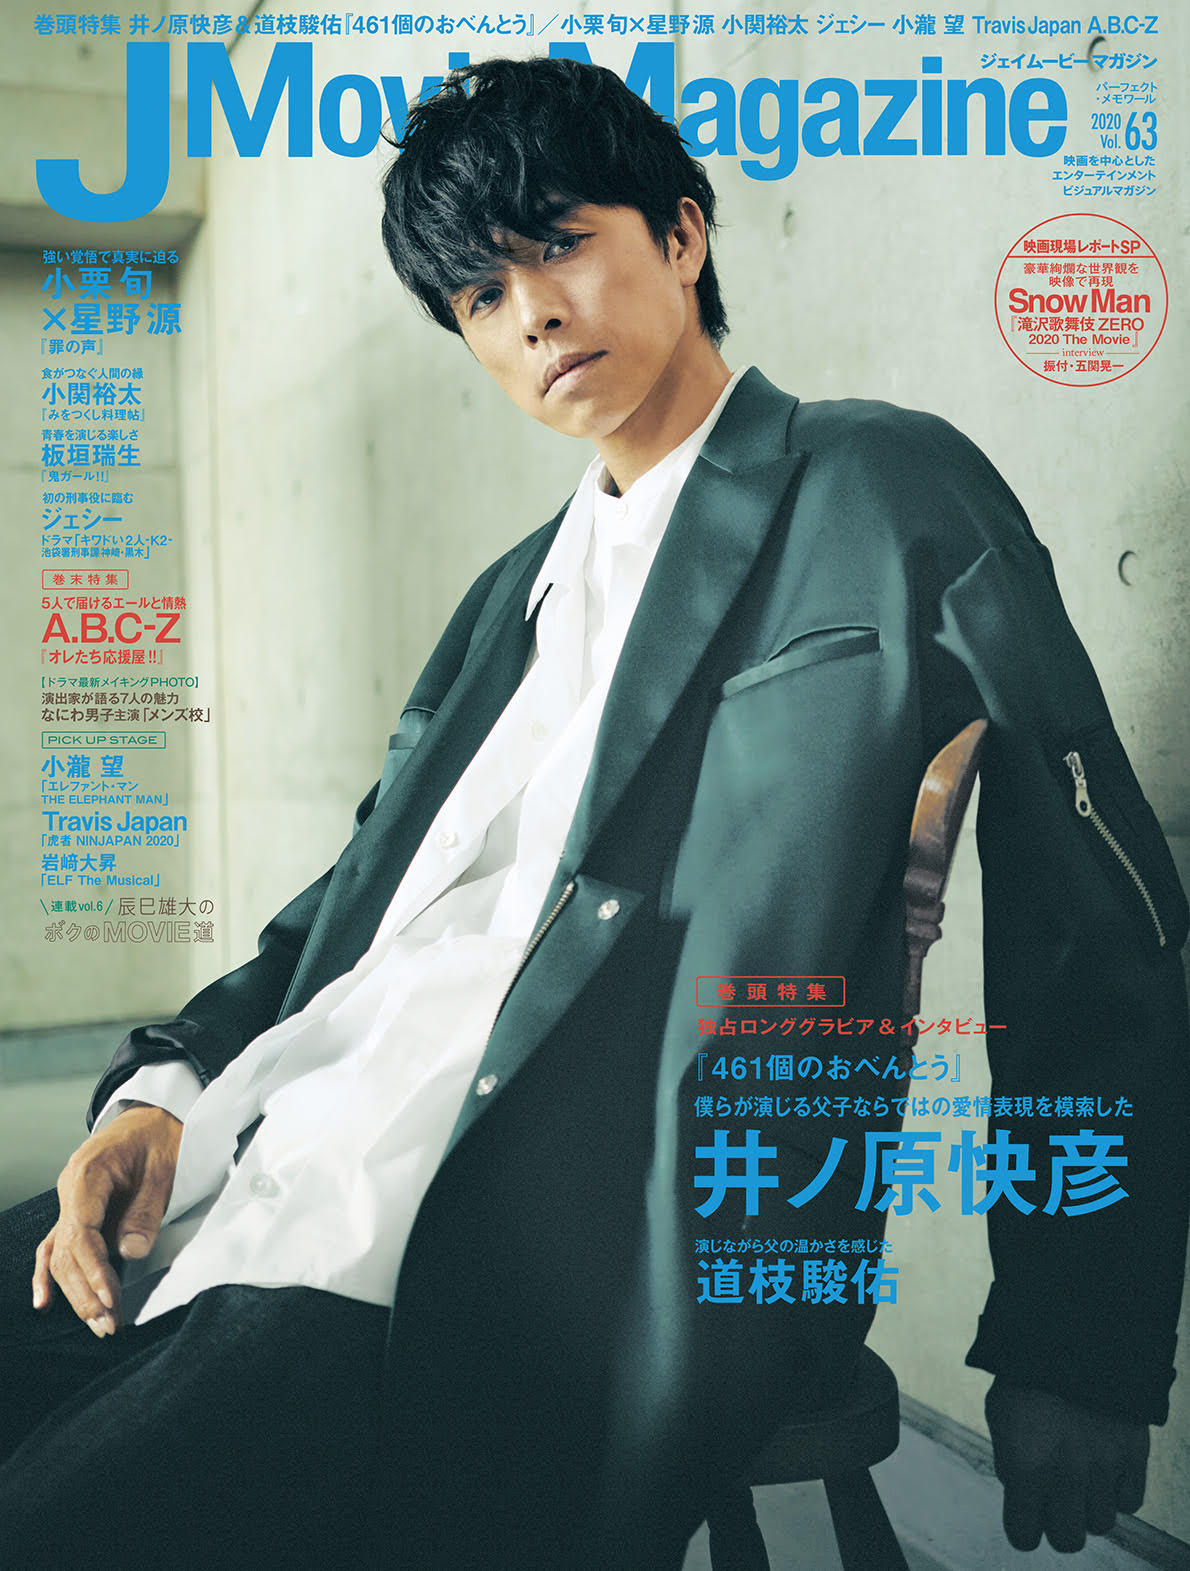 J Movie Magazine ジェイムービーマガジン Vol.63』10月1日発売